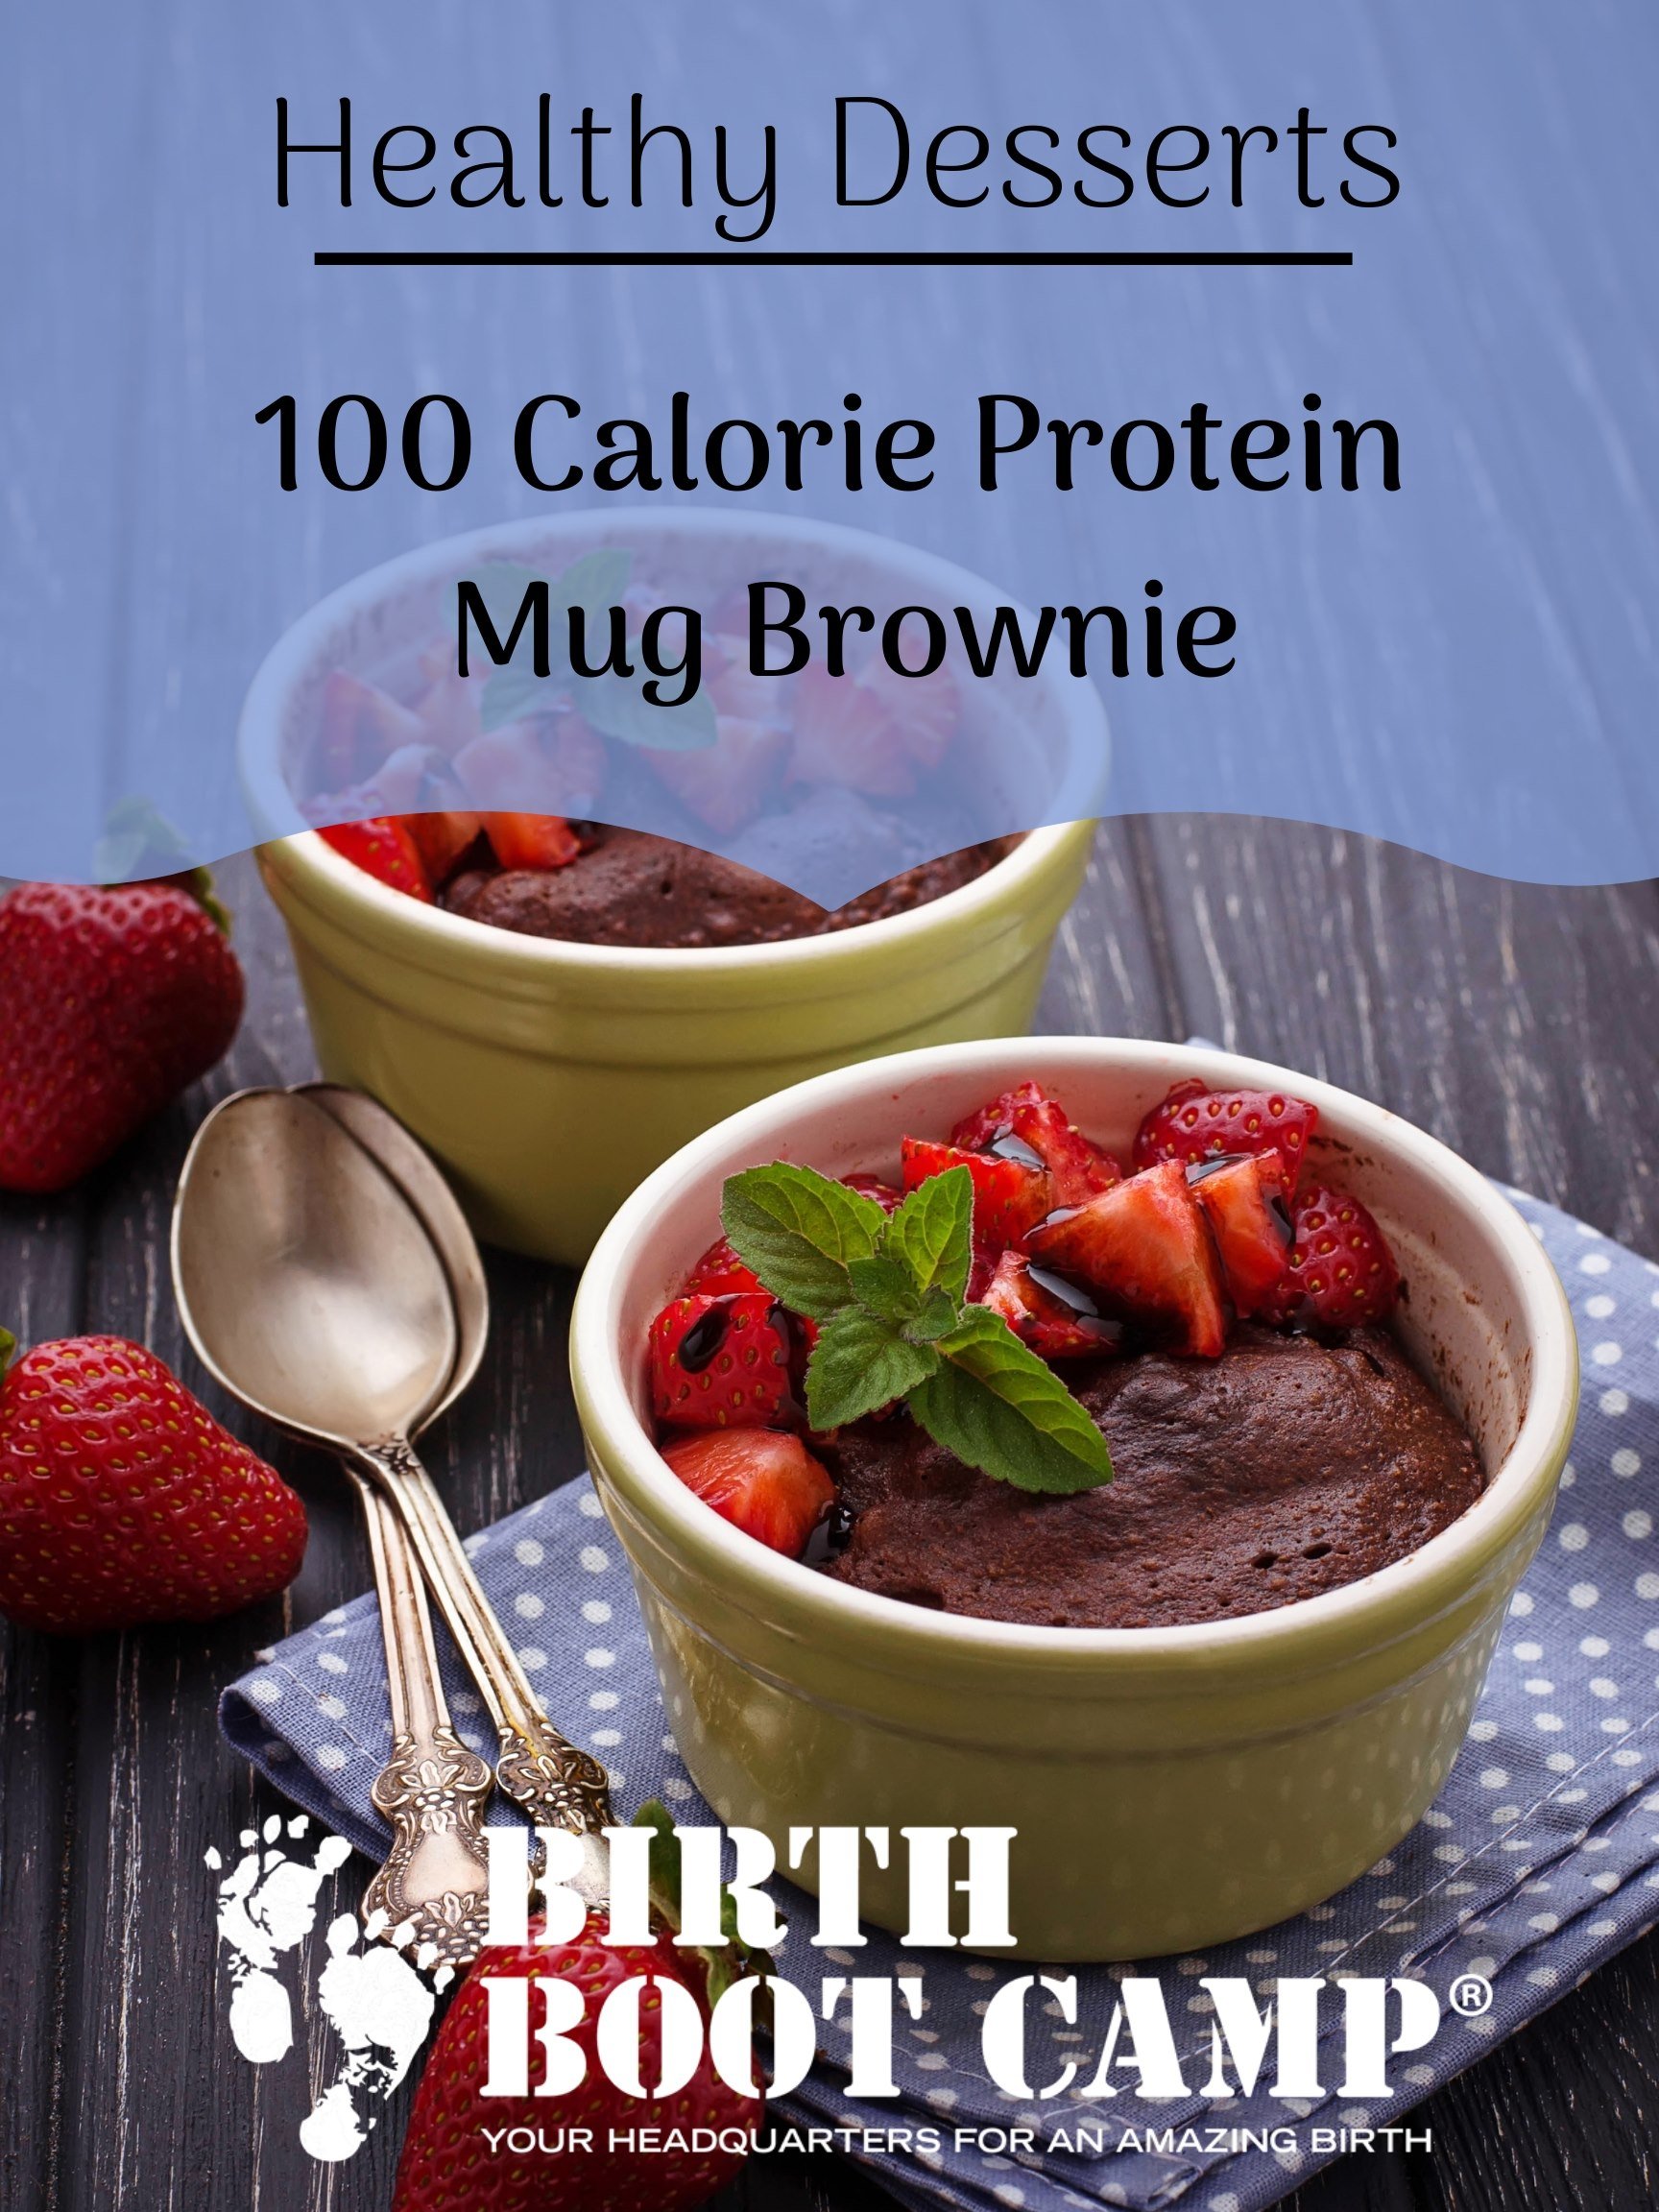 Mug Brownies – Easy Postpartum Healthy Dessert